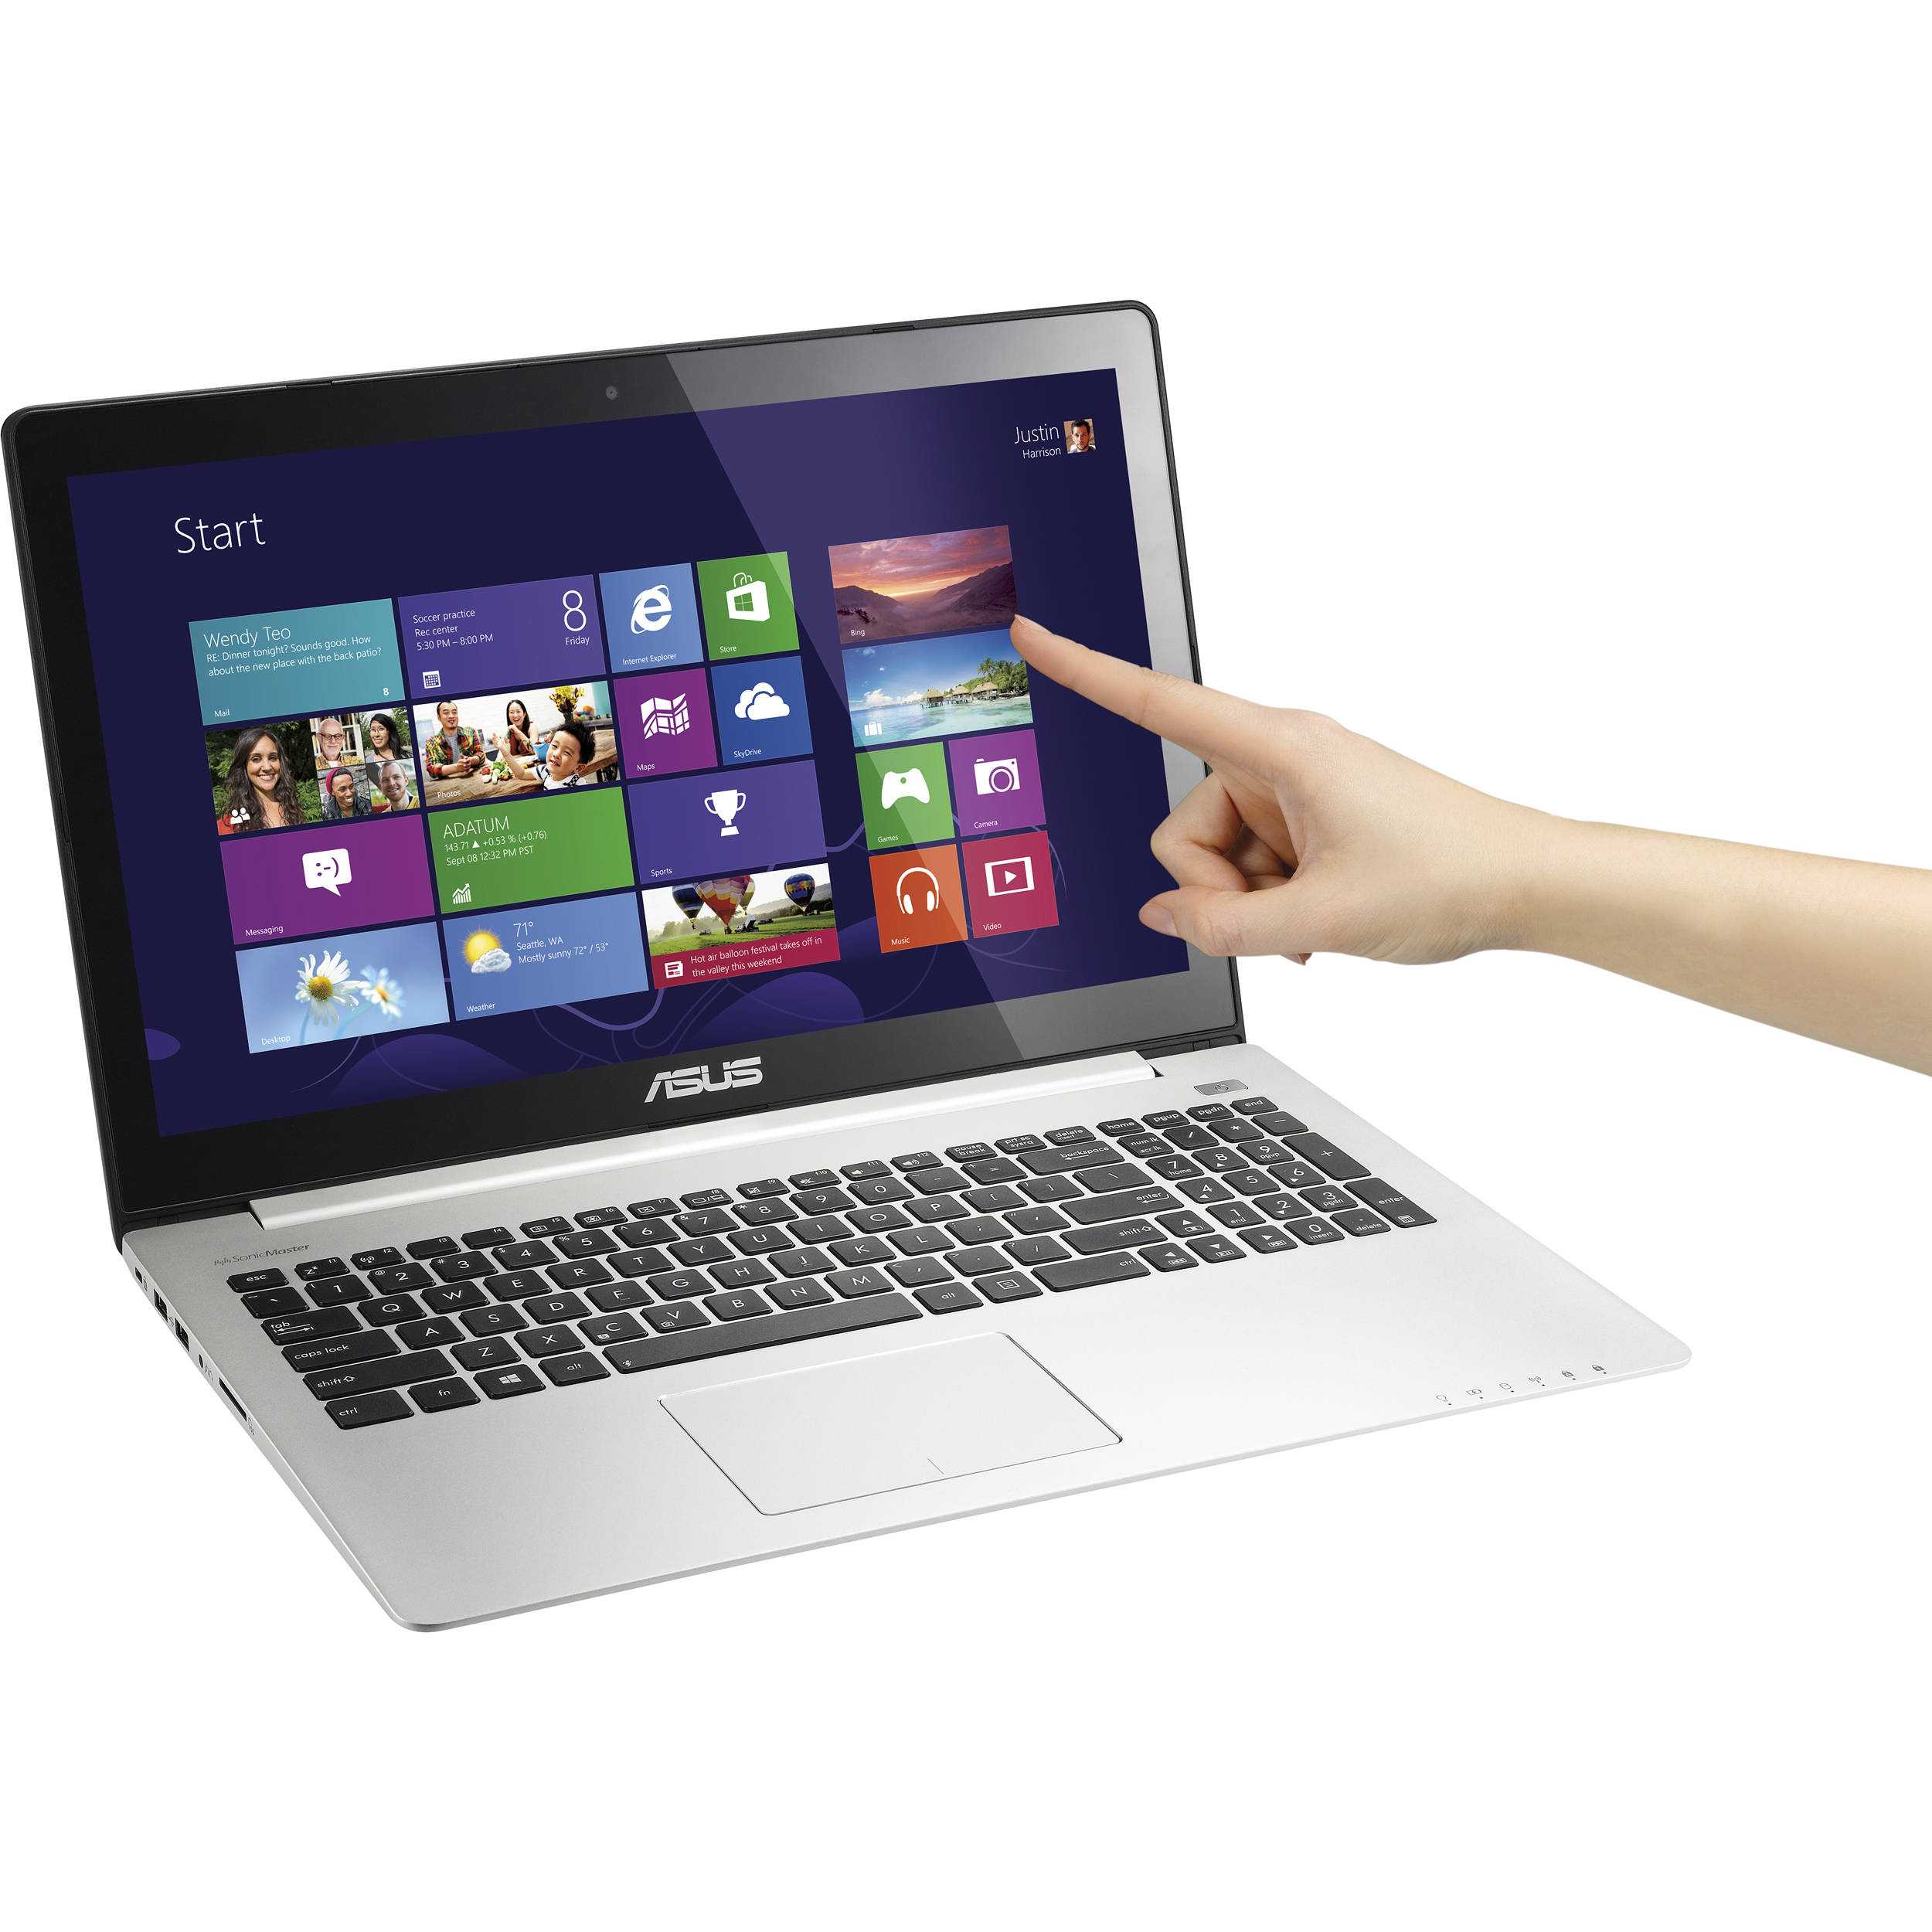 Ноутбук asus vivobook s400ca — купить, цена и характеристики, отзывы